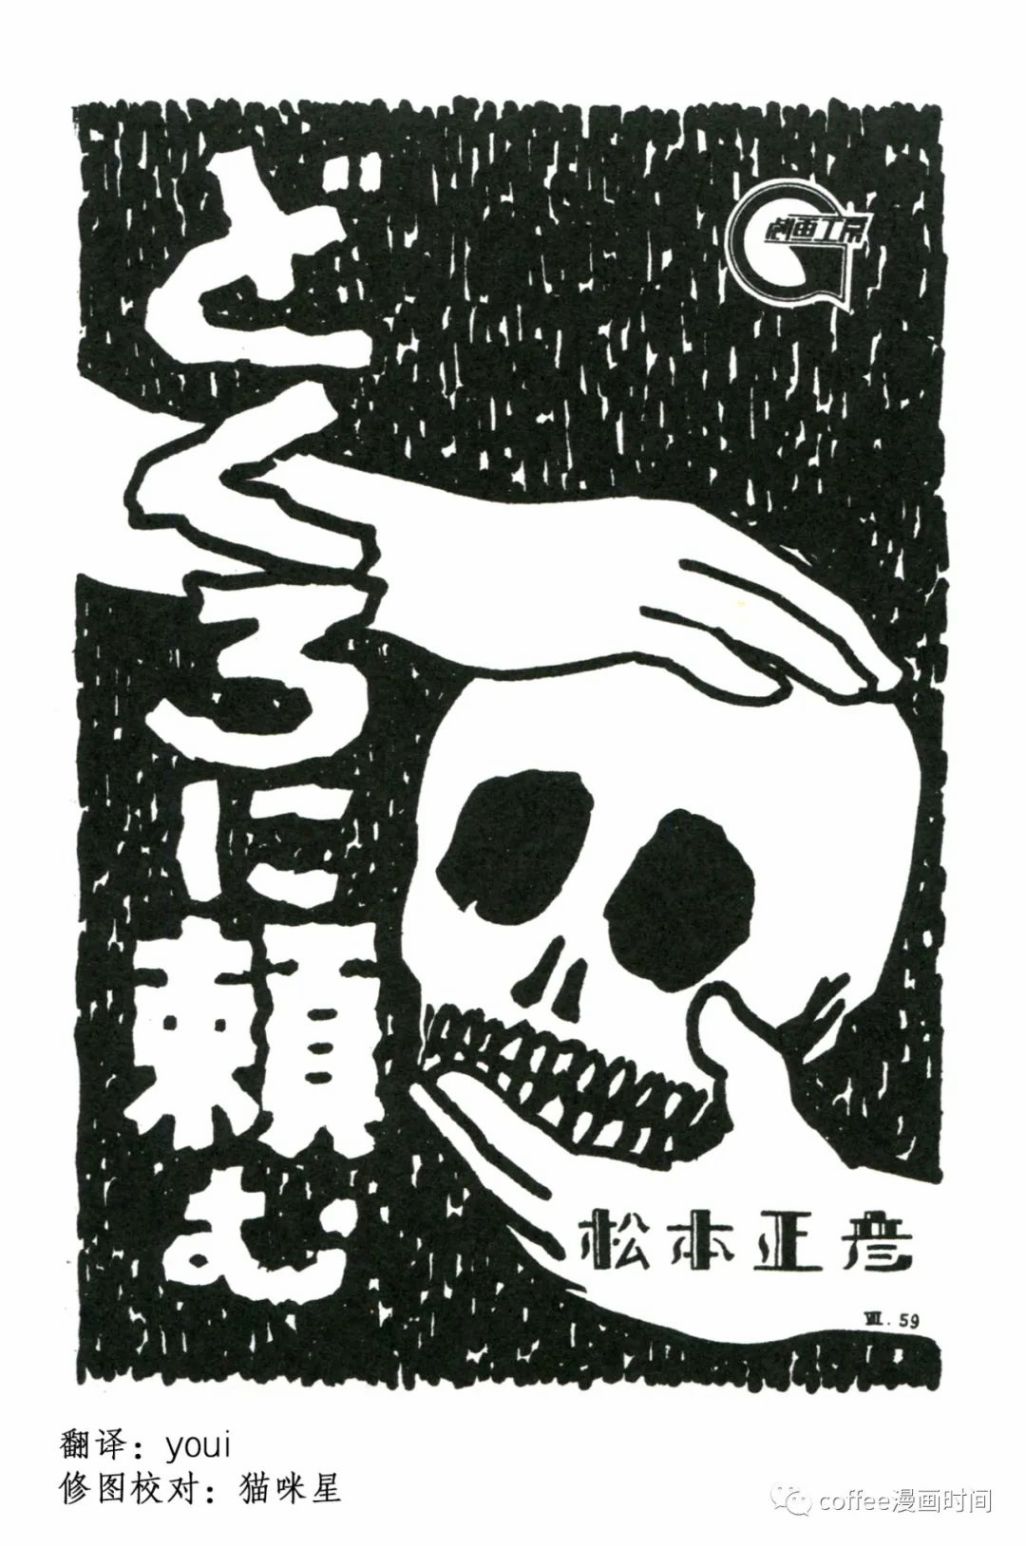 日本短篇漫画杰作集 - 松本正彦《向骷髅许愿》 - 1